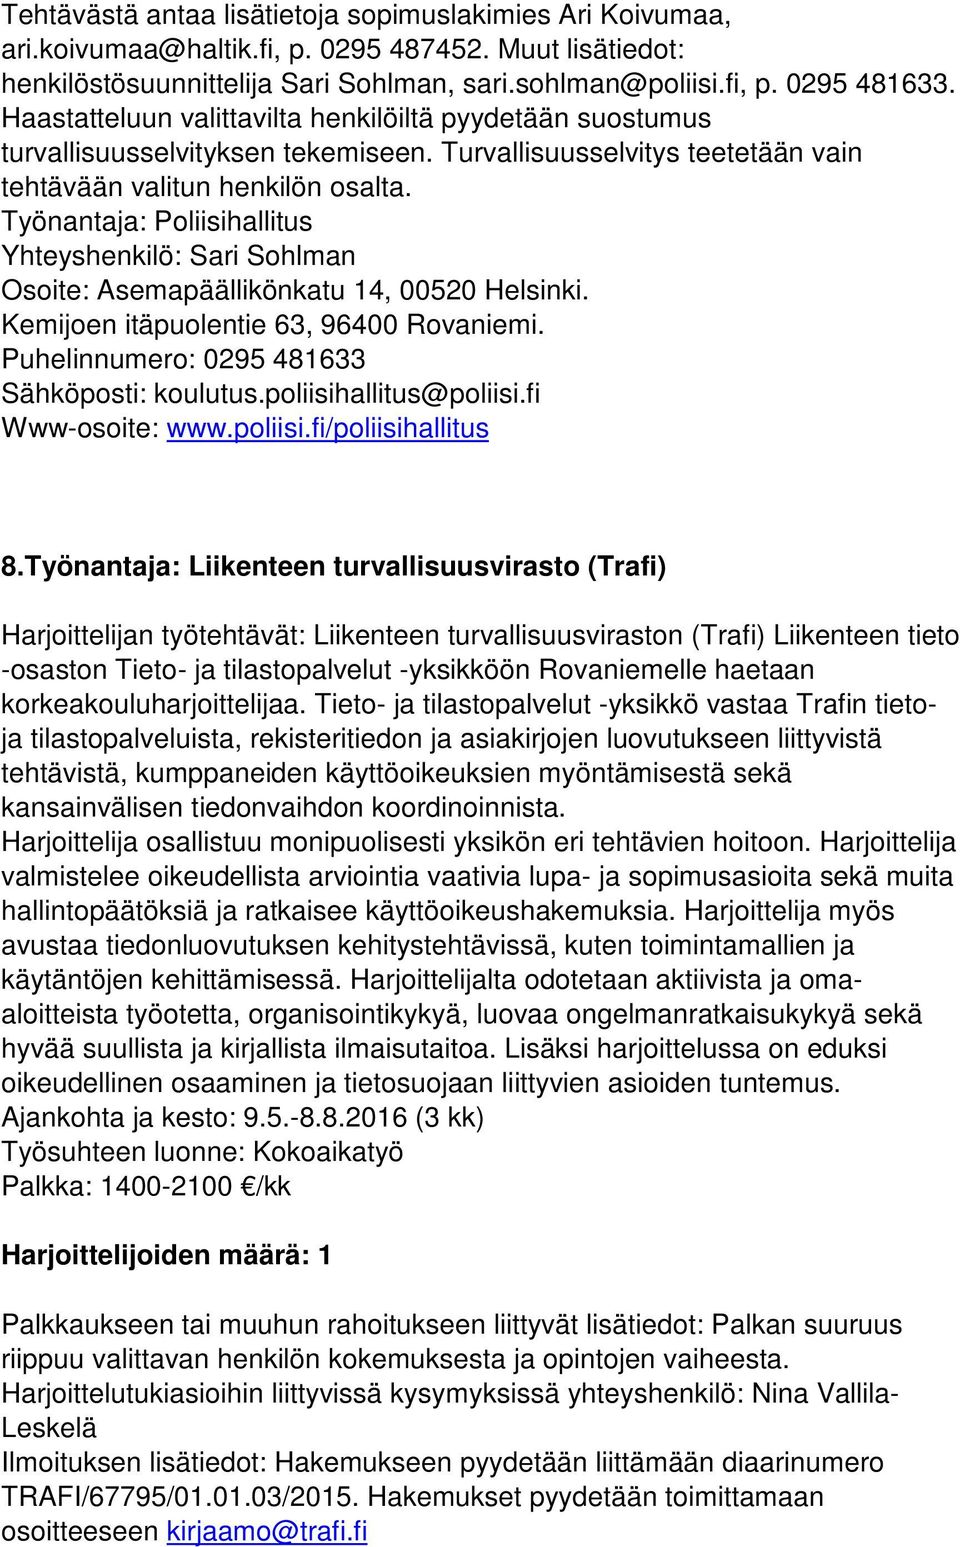 Työnantaja: Poliisihallitus Yhteyshenkilö: Sari Sohlman Osoite: Asemapäällikönkatu 14, 00520 Helsinki. Kemijoen itäpuolentie 63, 96400 Rovaniemi. Puhelinnumero: 0295 481633 Sähköposti: koulutus.